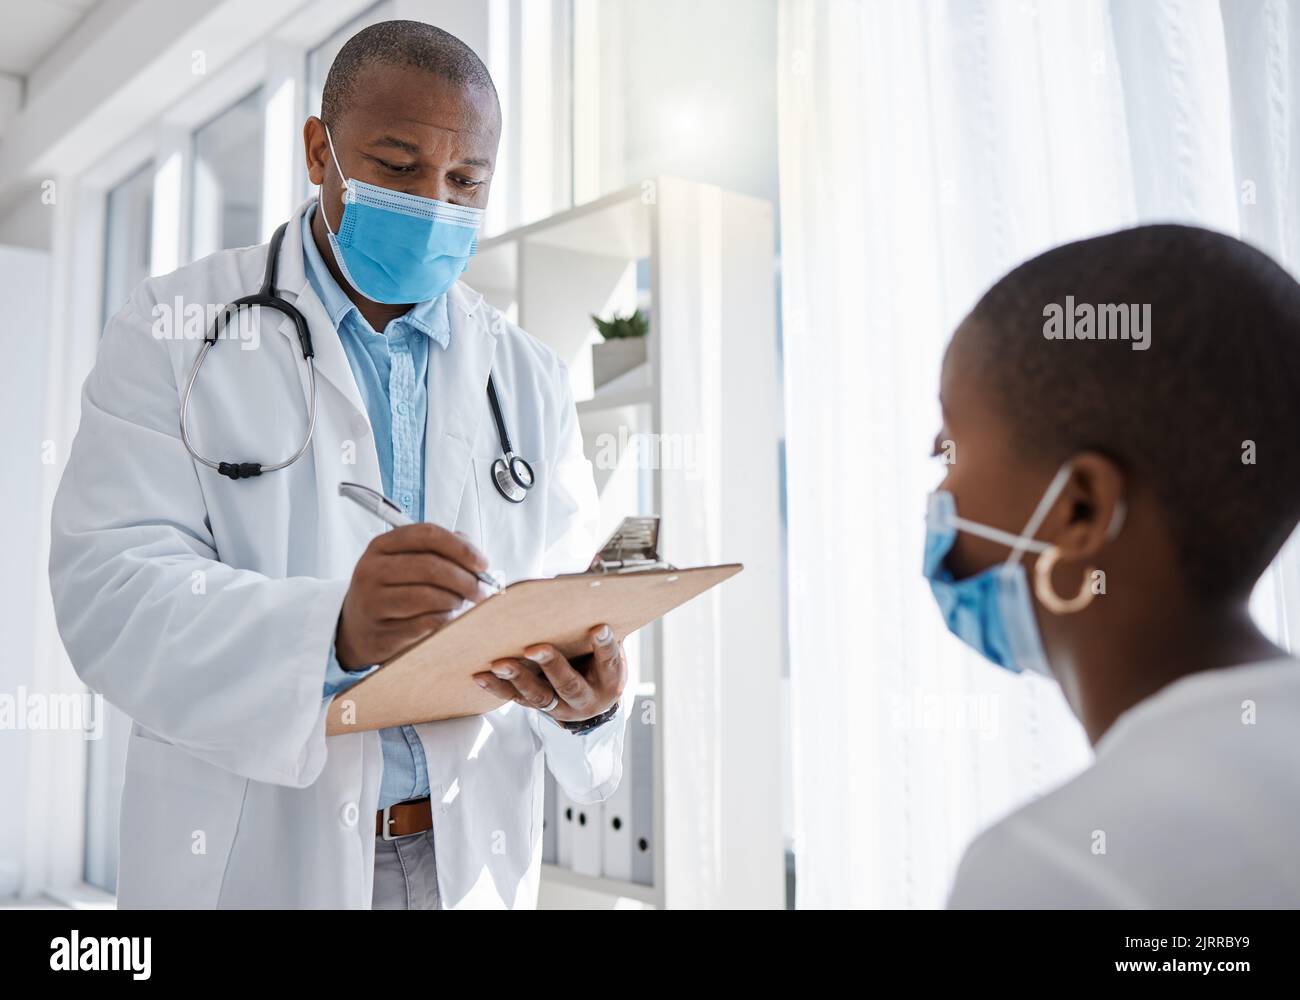 Covid médecin ou travailleur médical consultant un patient et écrivant des informations sur la santé à l'hôpital. Homme de santé travaillant sur l'assurance, le papier ou Banque D'Images